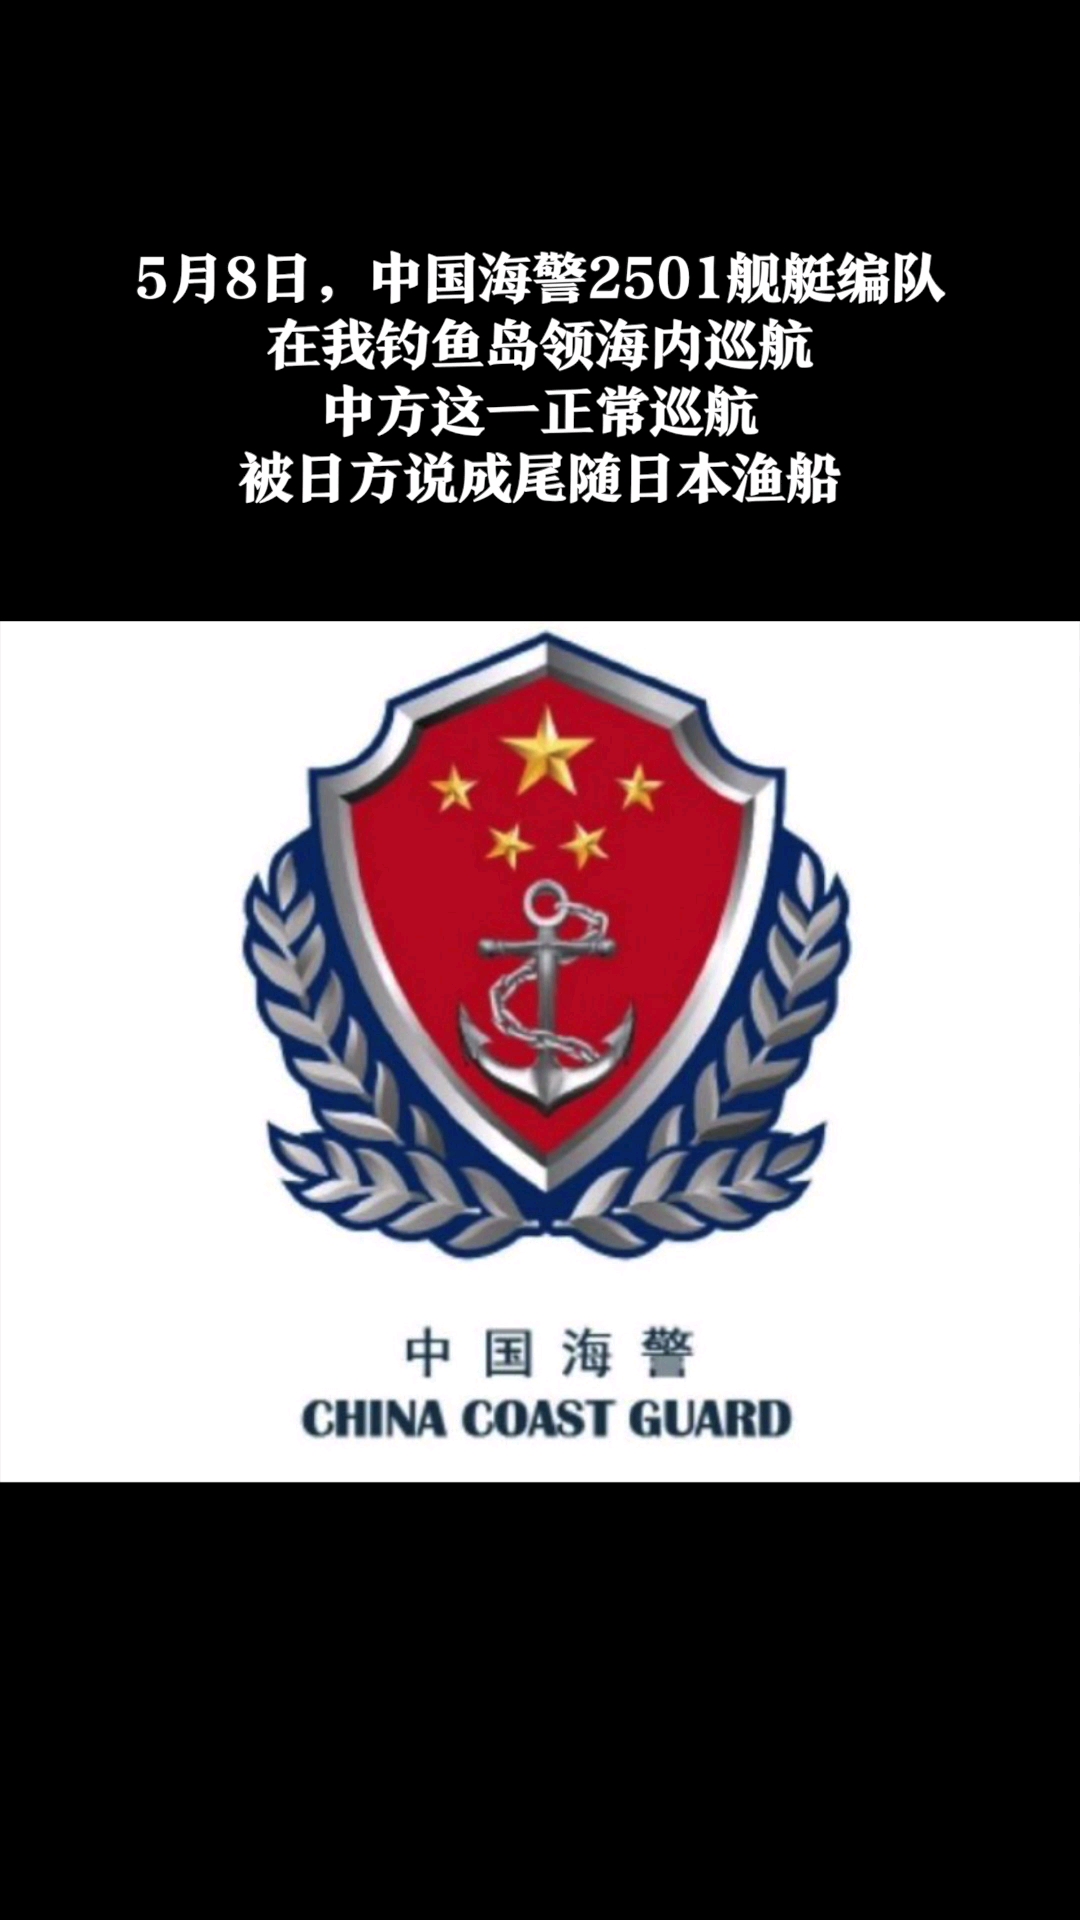 中国边海防标志图片